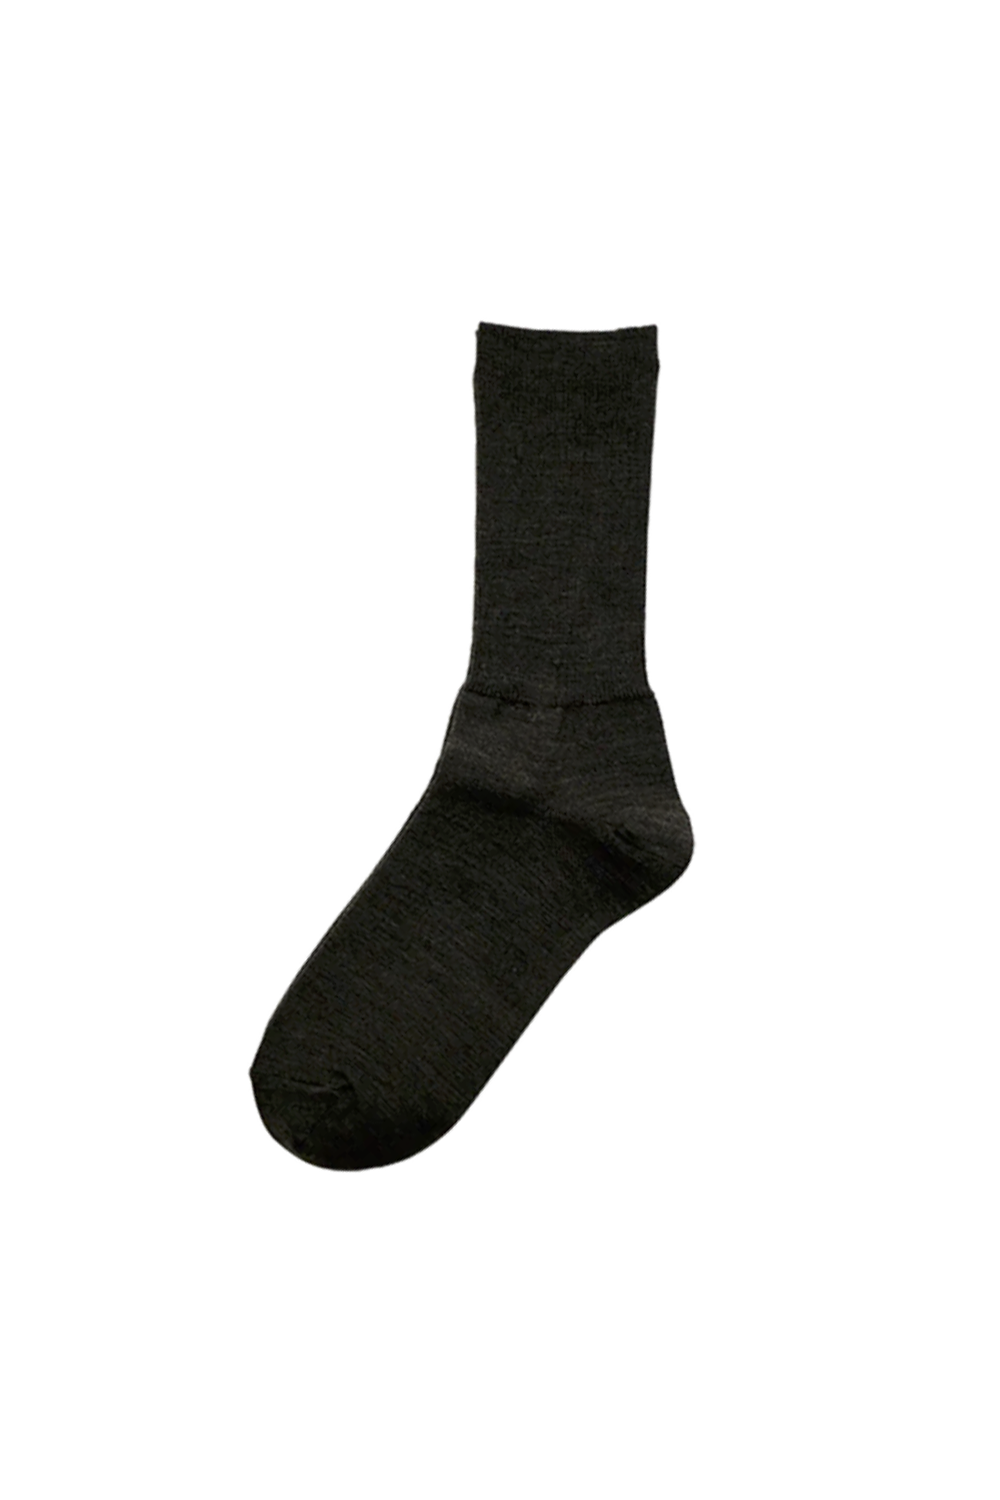 HK0104 Merino Wool Ribbed Socks, Brown